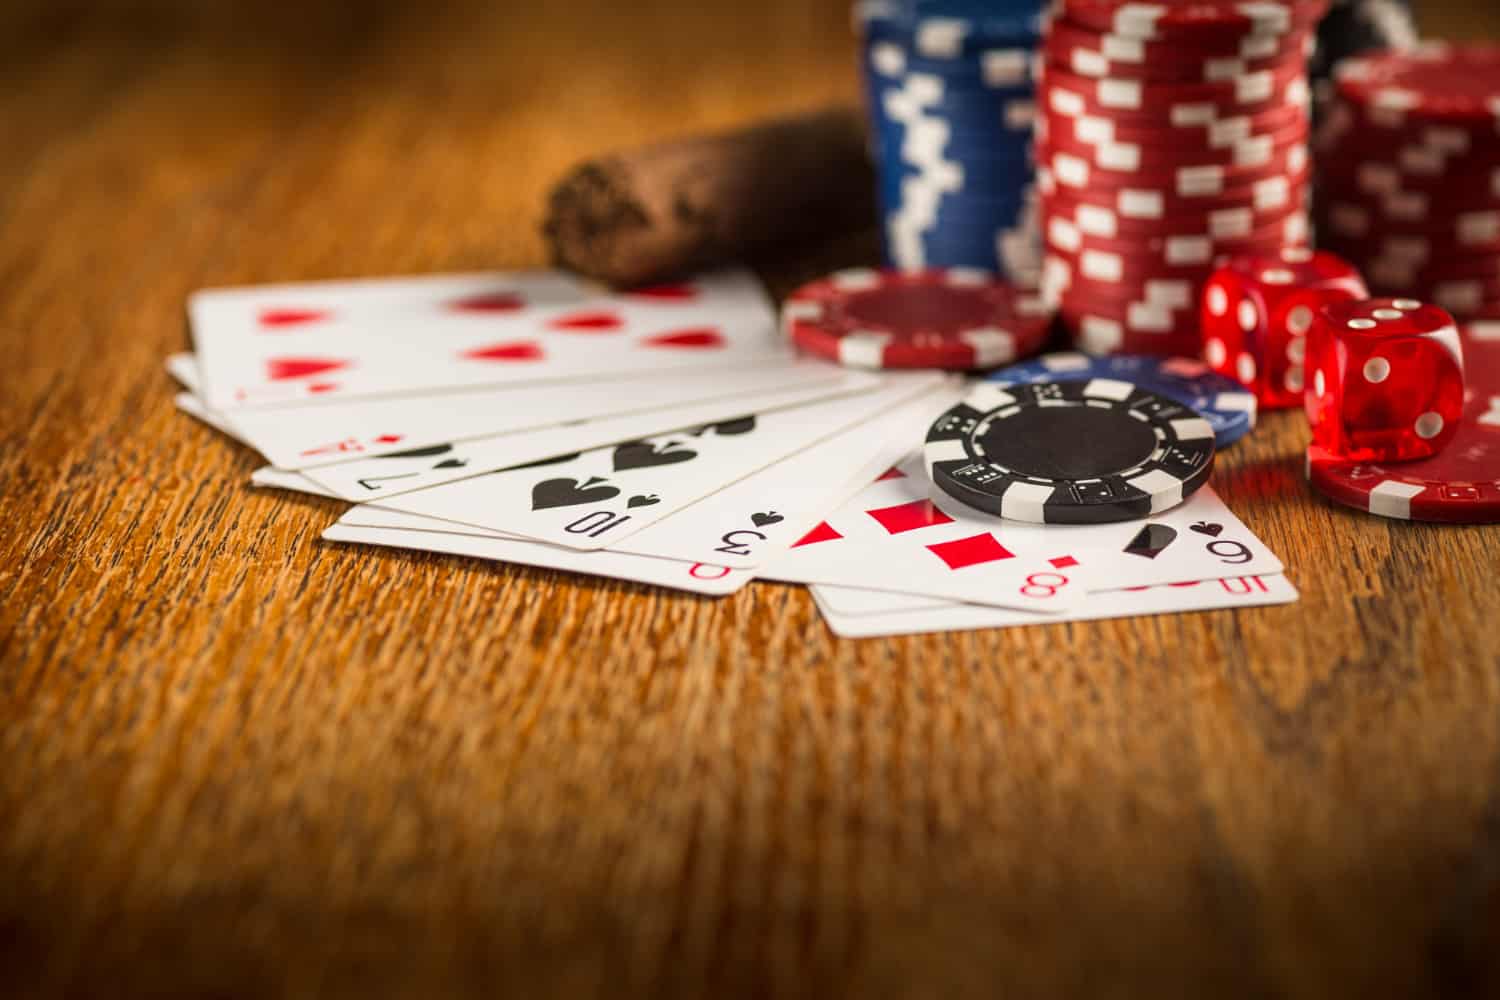 Melhores sites para jogar pôquer online em 2021 | da697f41 cartas2 | poquer | jogar pôquer online poquer